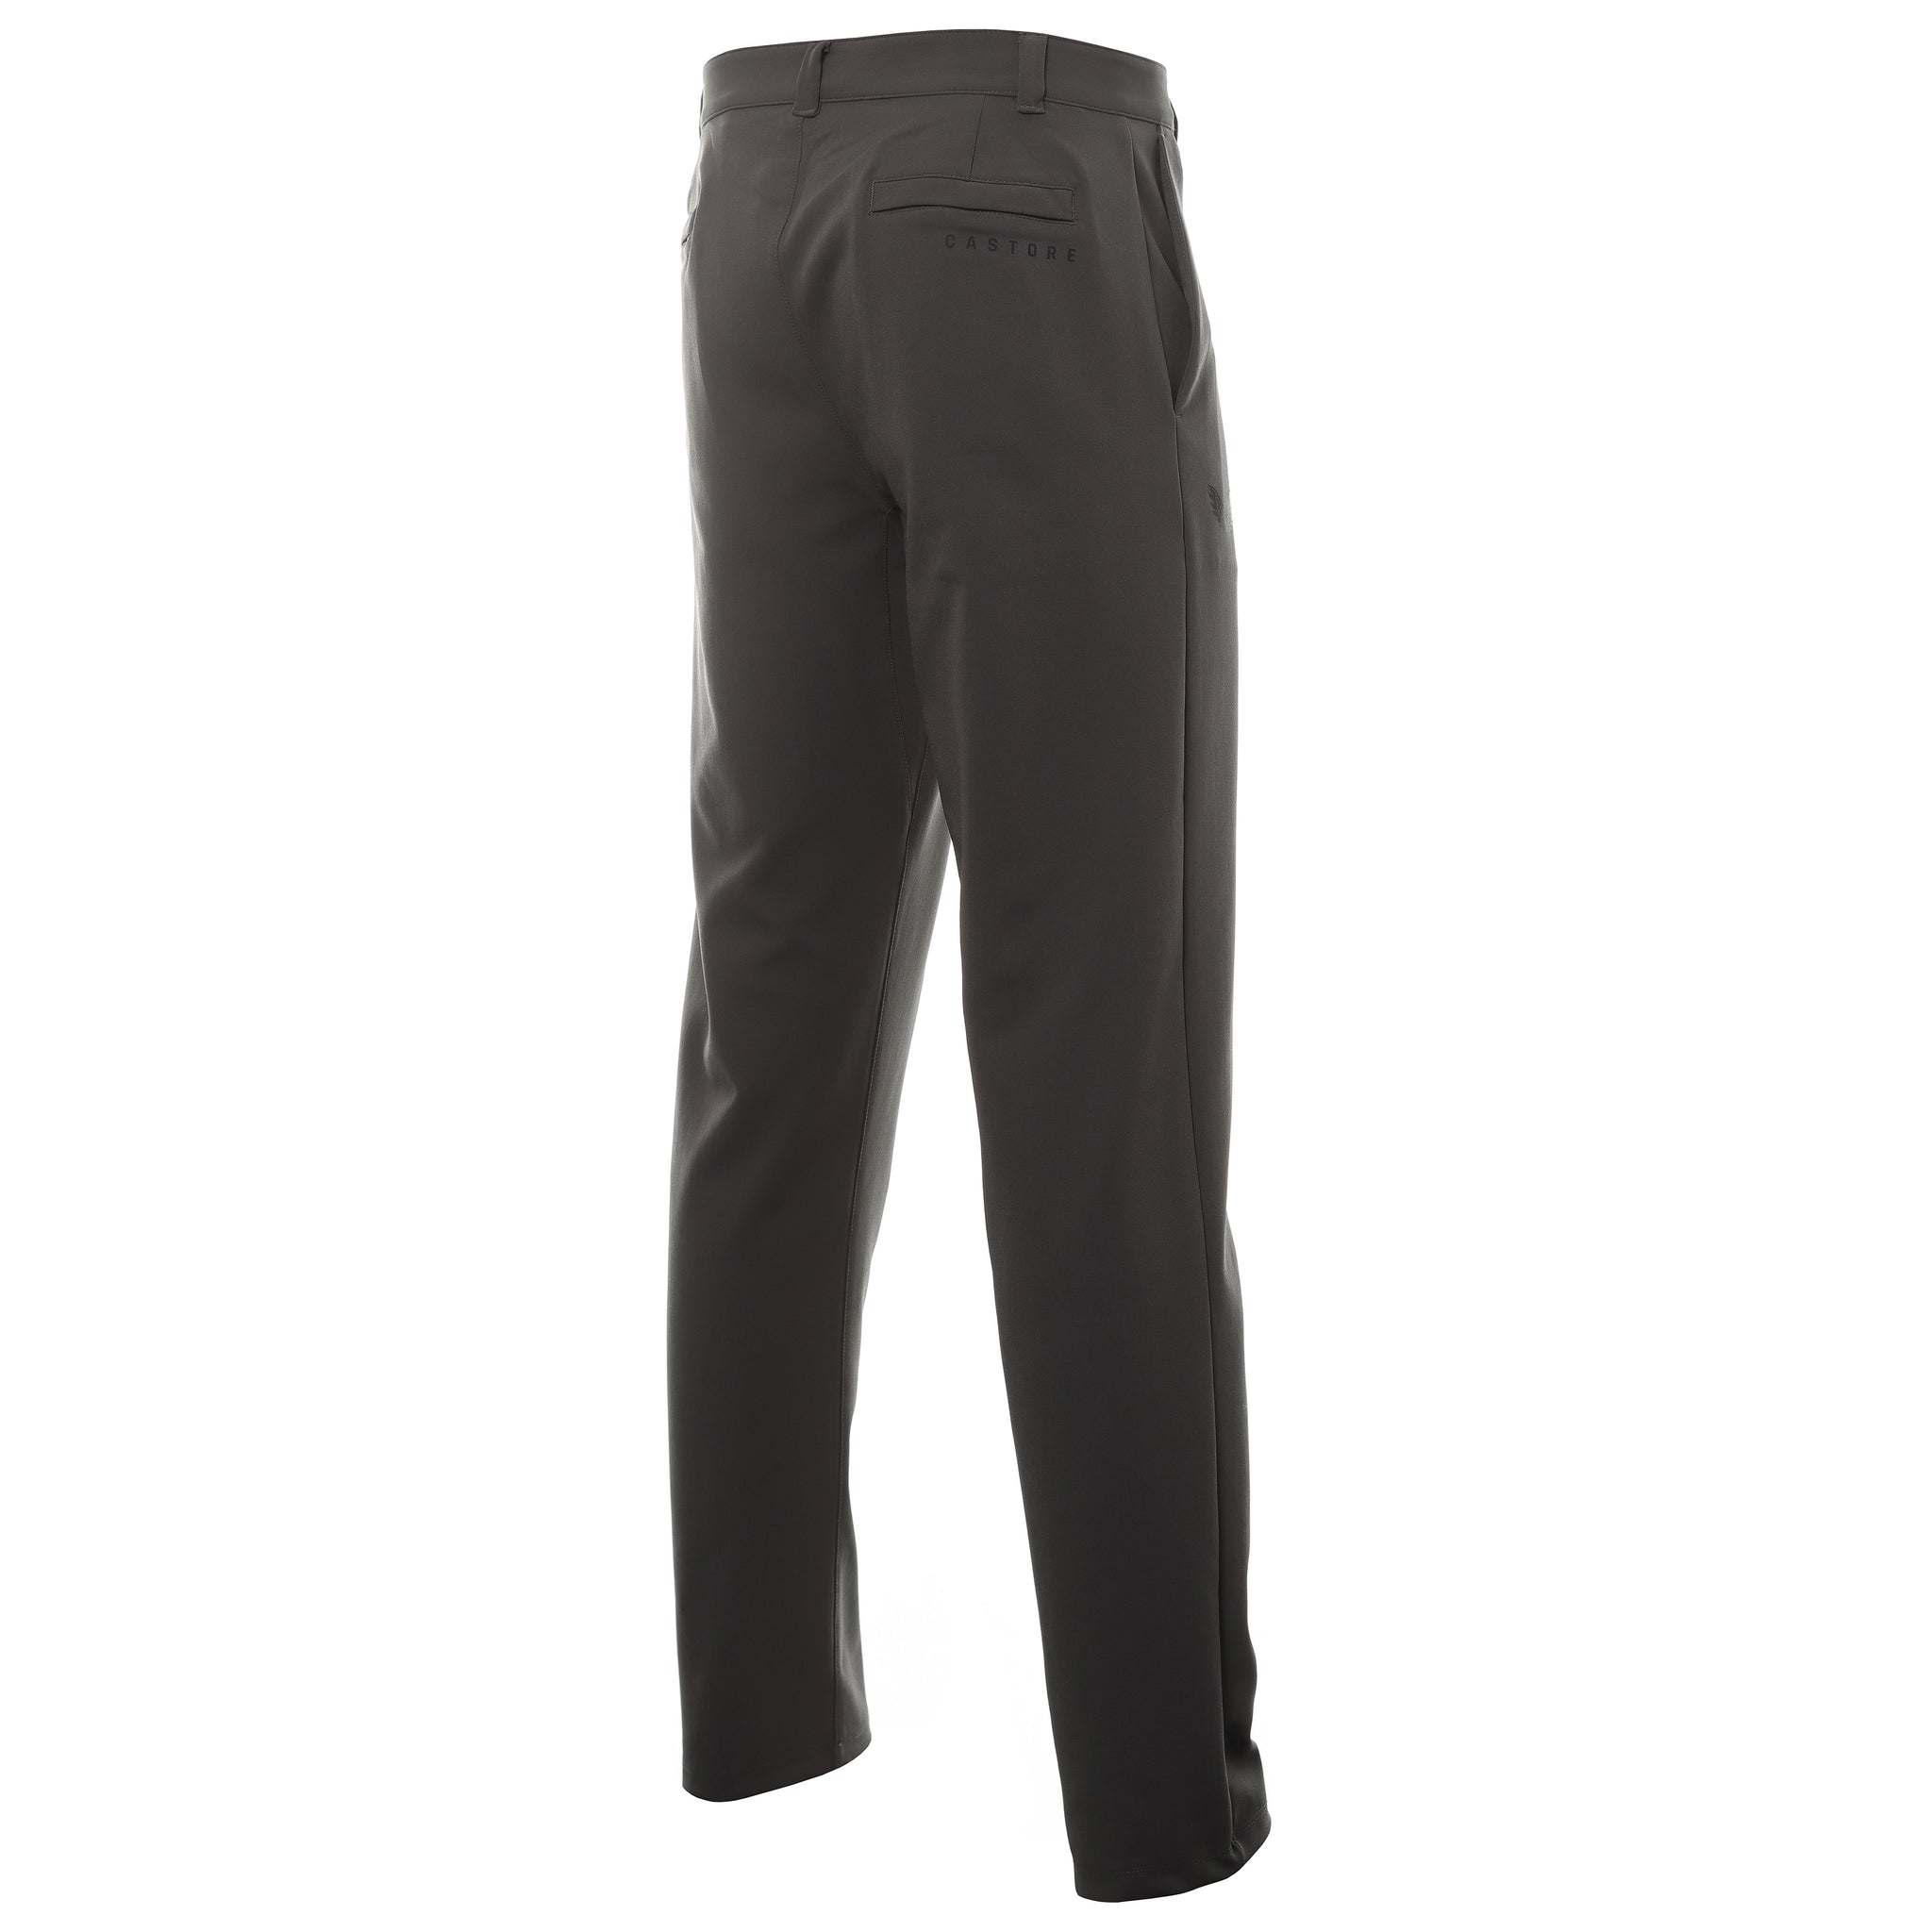 castore-tech-golf-trousers-cm0822-magnet